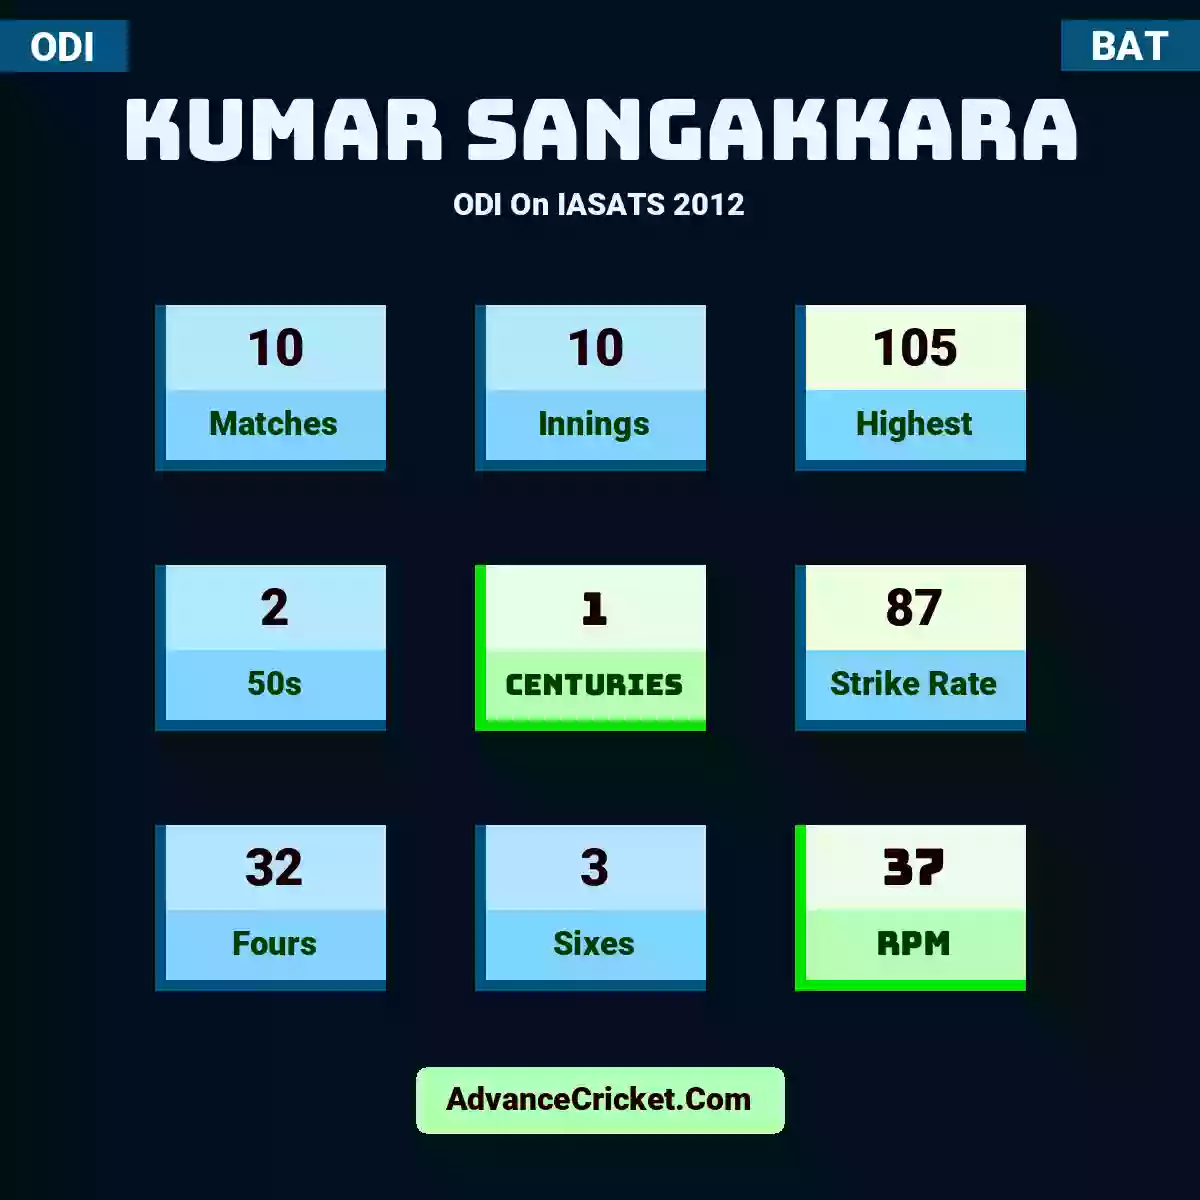 Kumar Sangakkara ODI  On IASATS 2012, Kumar Sangakkara played 10 matches, scored 105 runs as highest, 2 half-centuries, and 1 centuries, with a strike rate of 87. K.Sangakkara hit 32 fours and 3 sixes, with an RPM of 37.